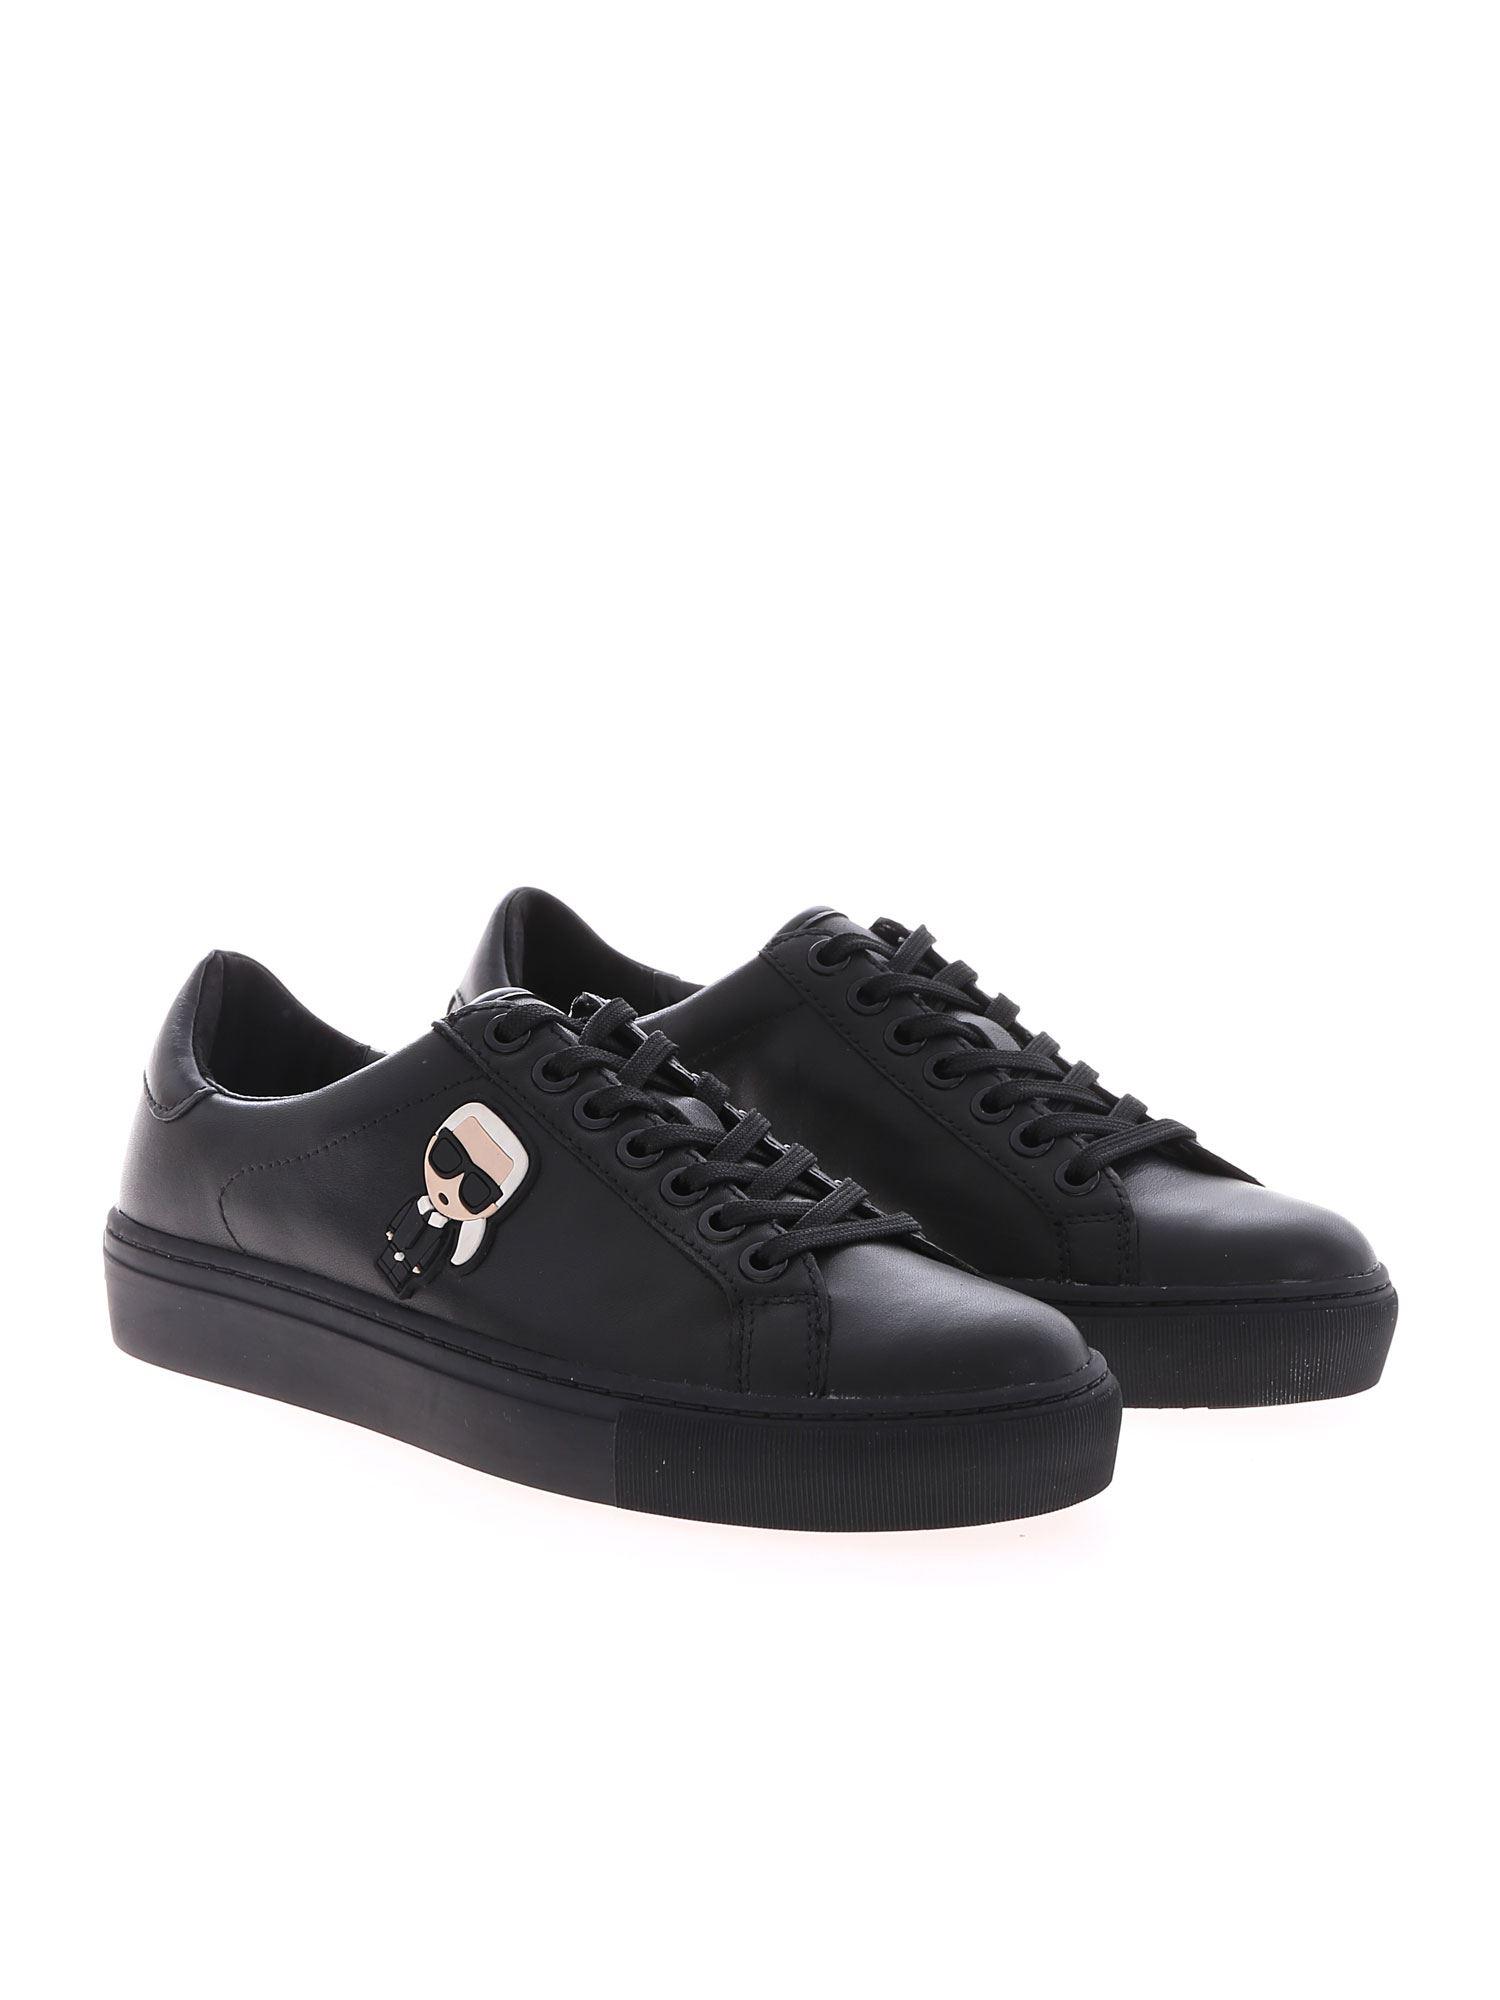 Karl Lagerfeld Leather Karl Ikonik Sneakers In Black - Lyst